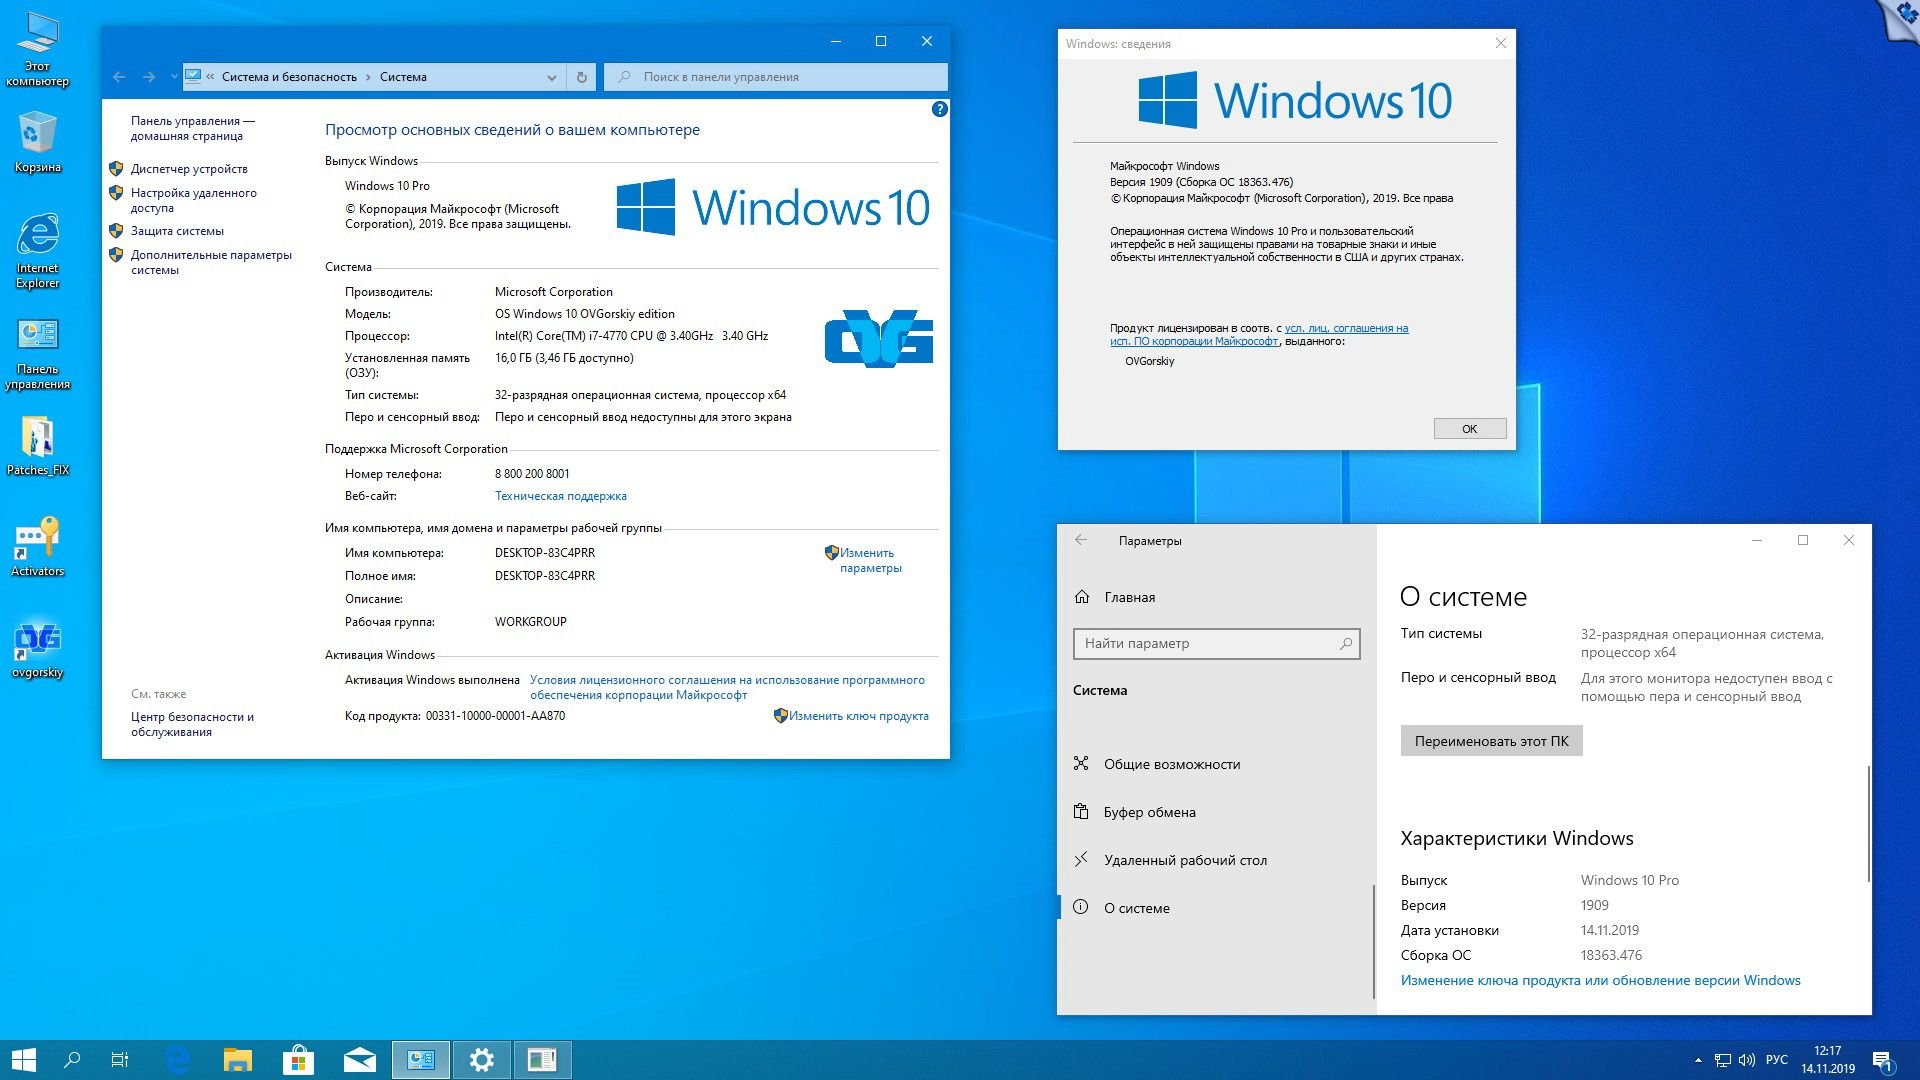 Легкая виндовс 10 64. Виндовс 10. О системе Windows 10. Операционная система Windows 10 Pro x64. Windows 10 Pro система.